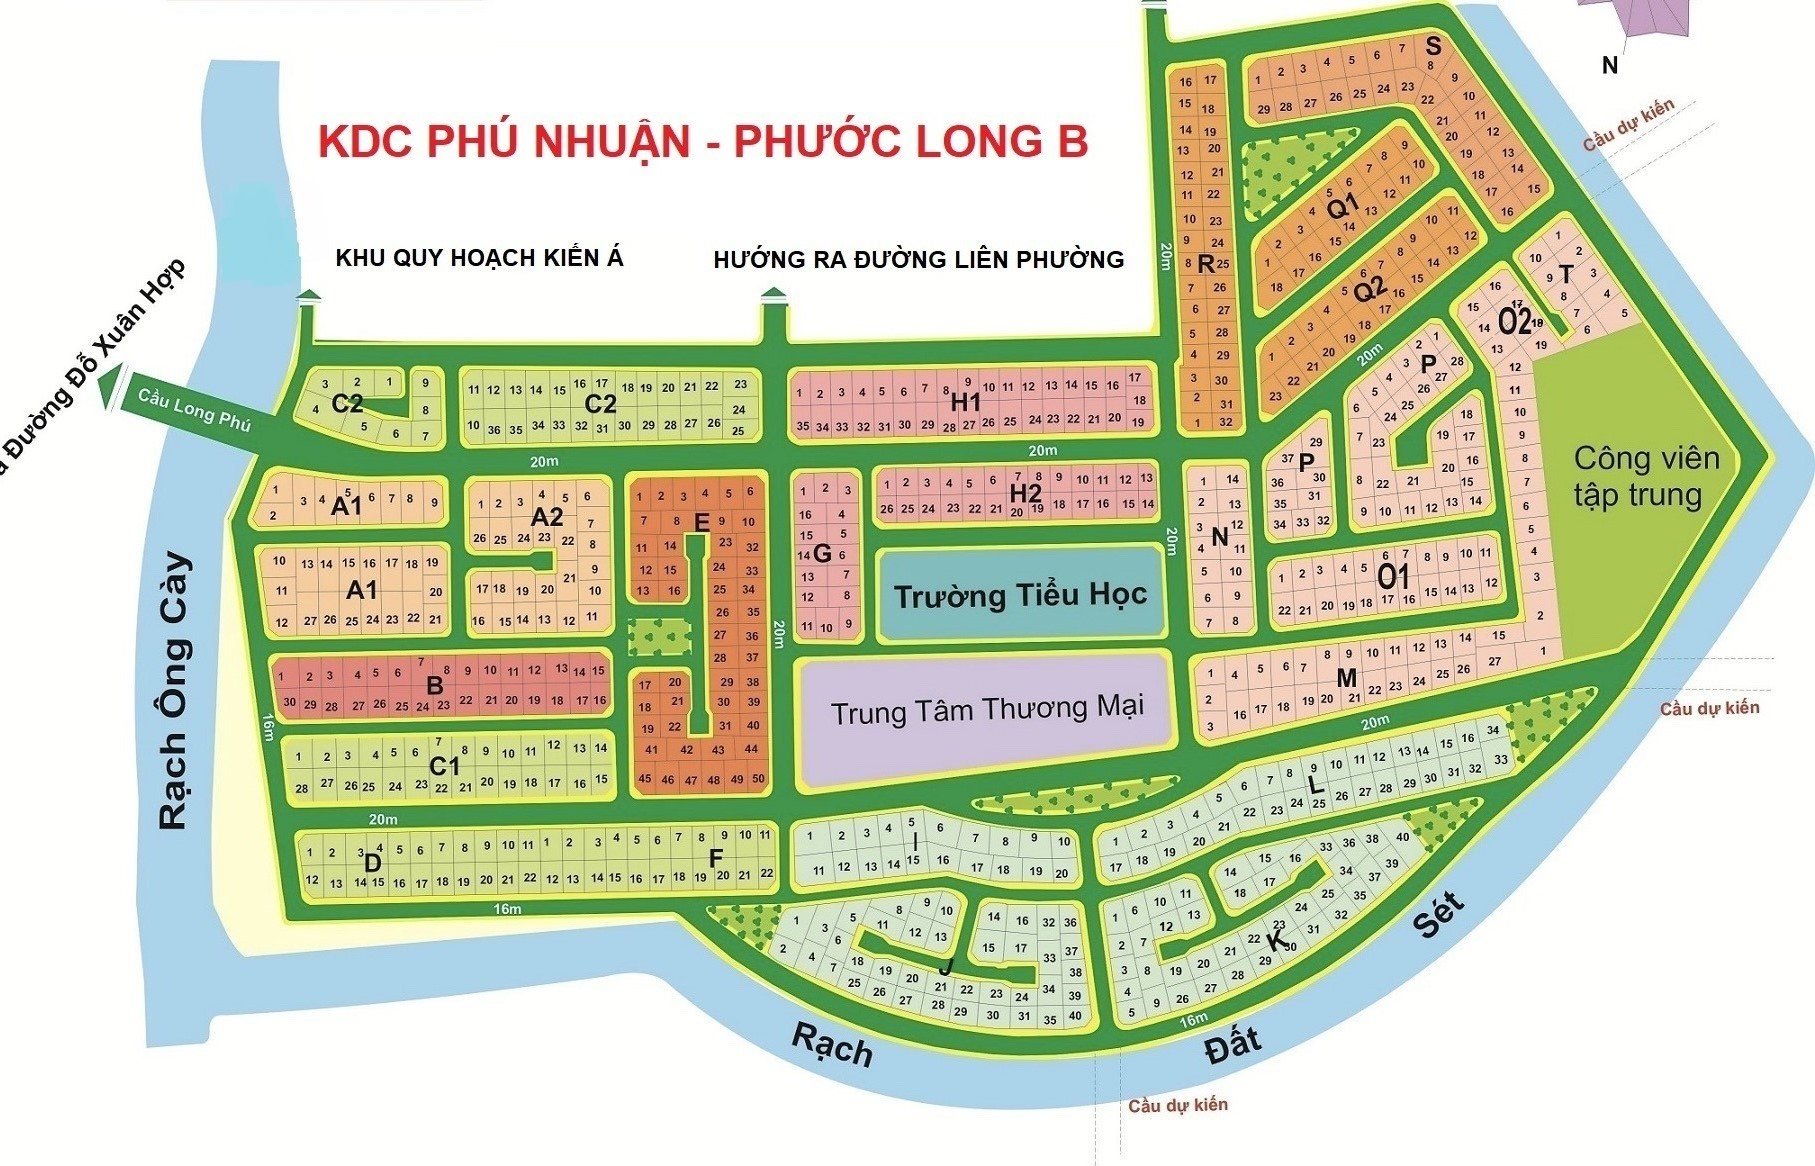 Cần bán đất nền đẹp, đối diện trường Mẫu giáo, diện tích 285m² nằm trong KDC Phú Nhuận, PLB, quận 9